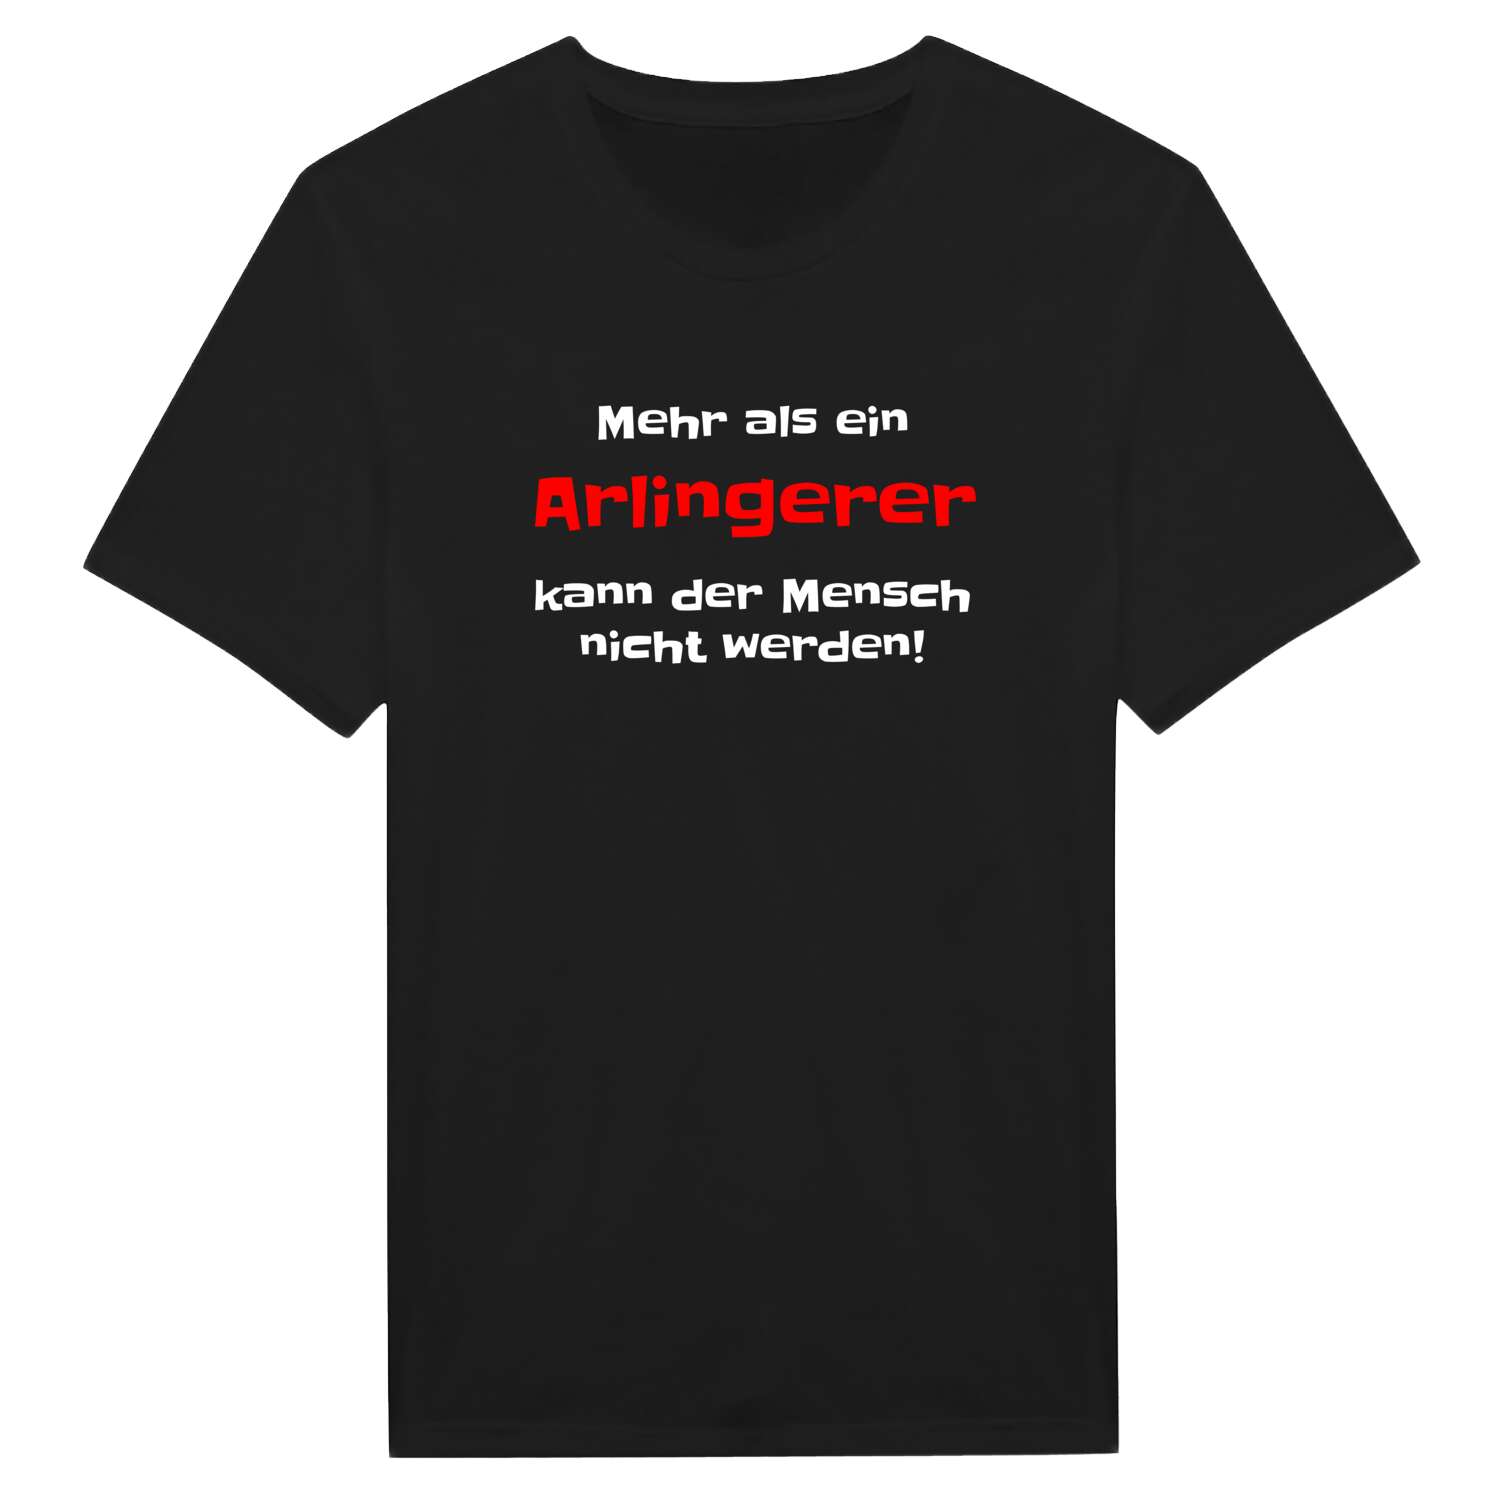 Arlinger T-Shirt »Mehr als ein«